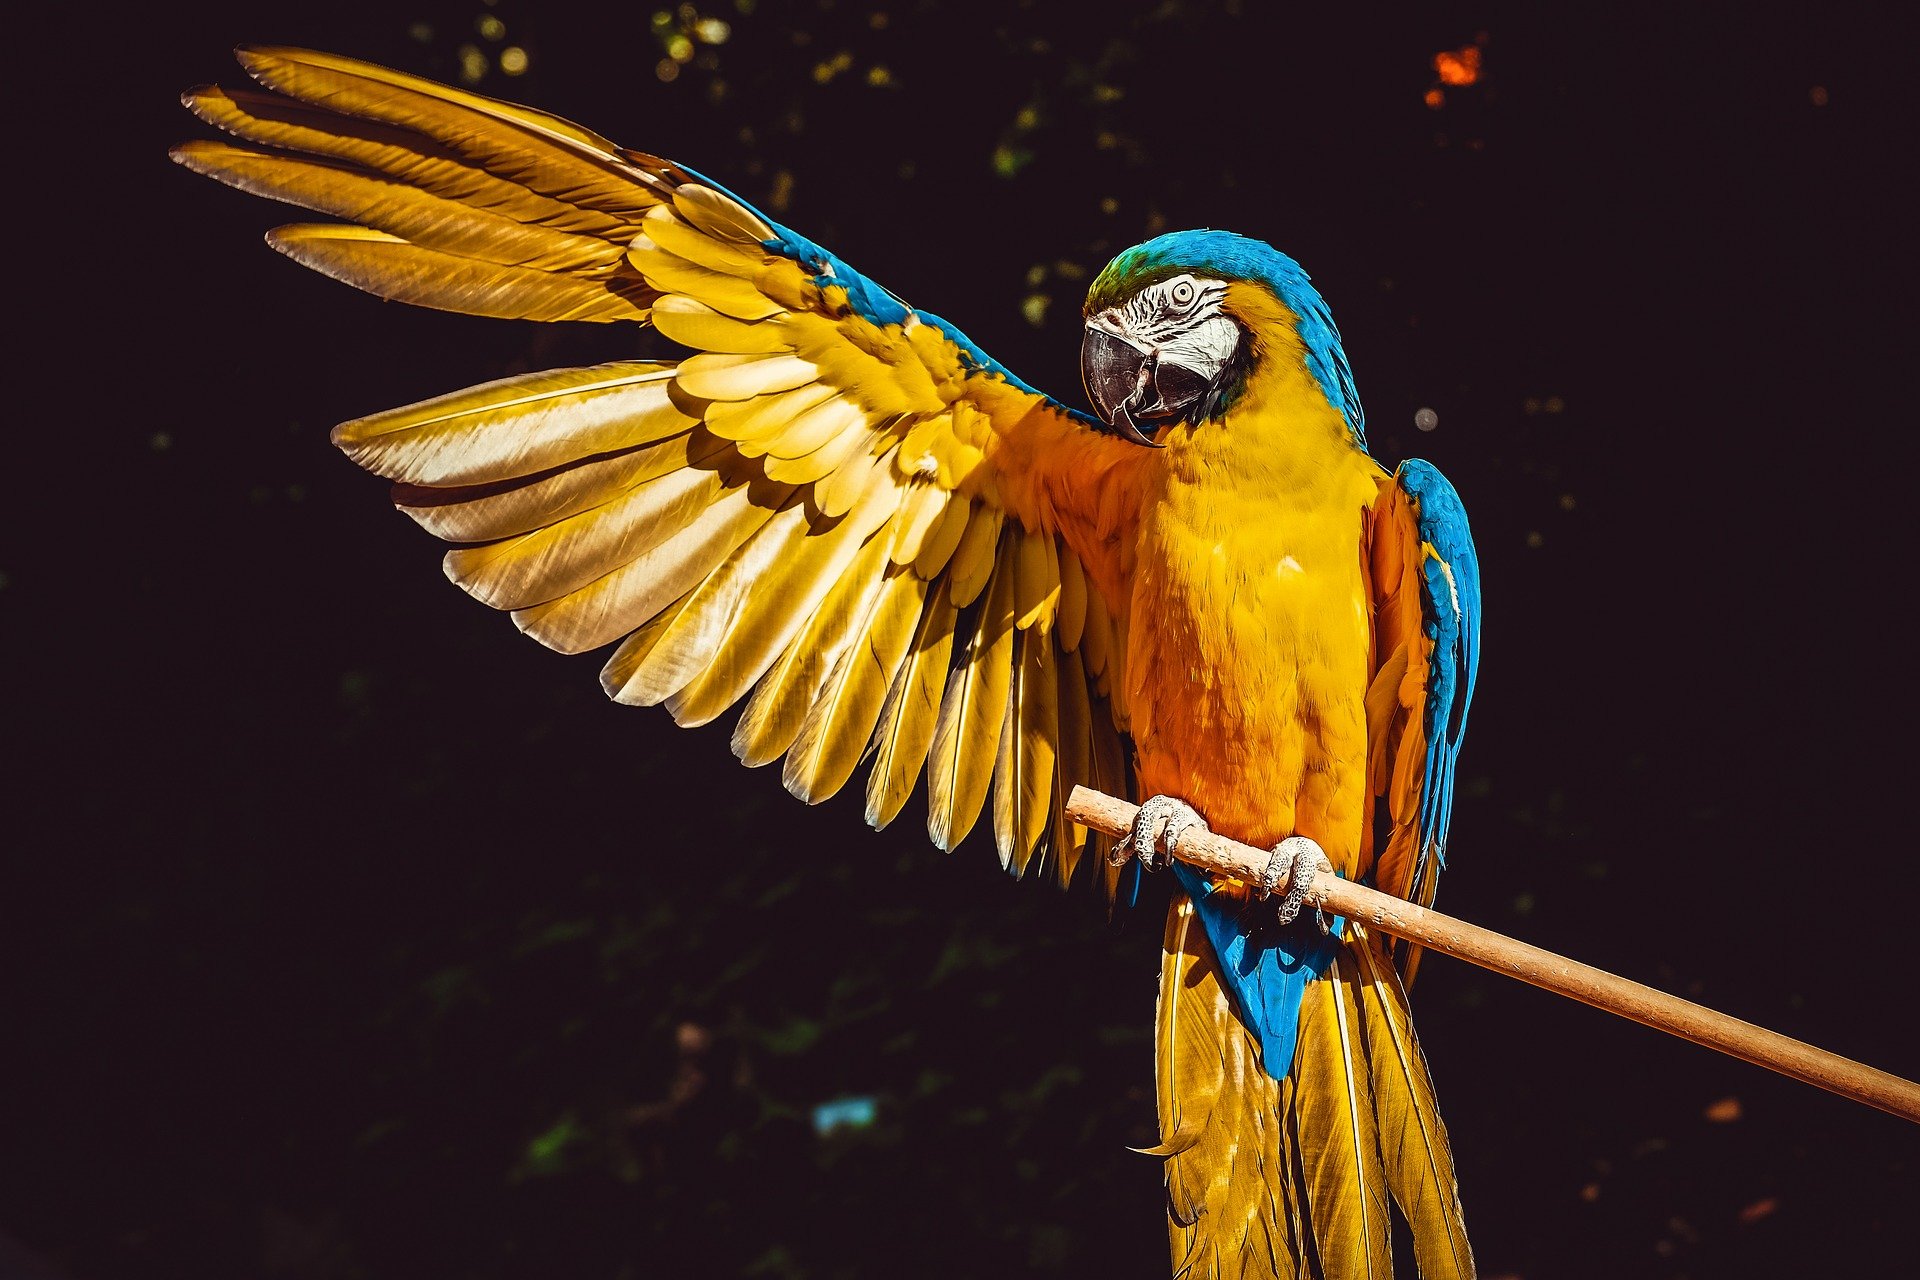 Ein Porträtbild eines blau-goldenen Aras. | Quelle: Pixabay